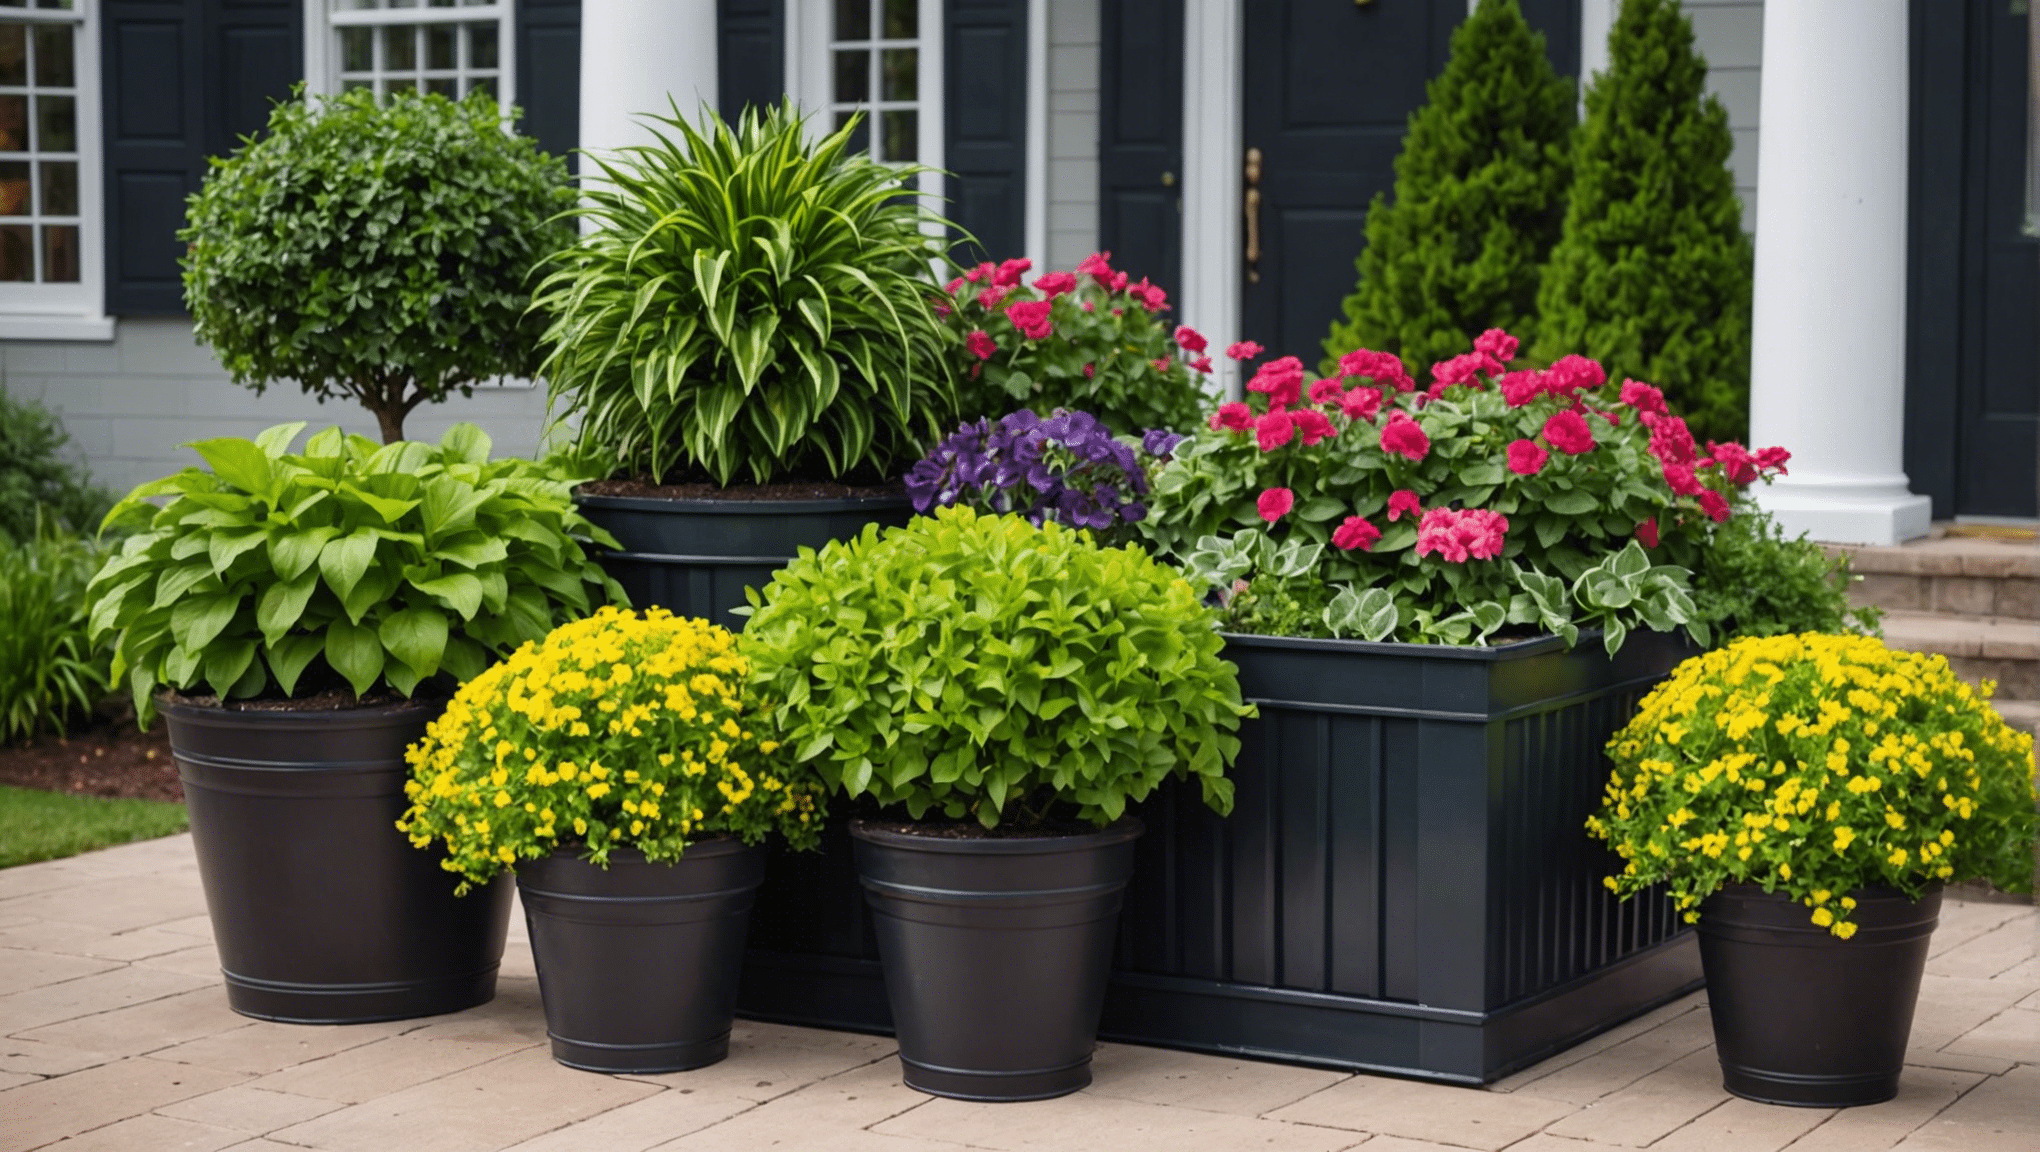 upptäck inspirerande trädgårdsskötselidéer på hgtv och förvandla ditt utomhusutrymme med fantastiska tips och design.